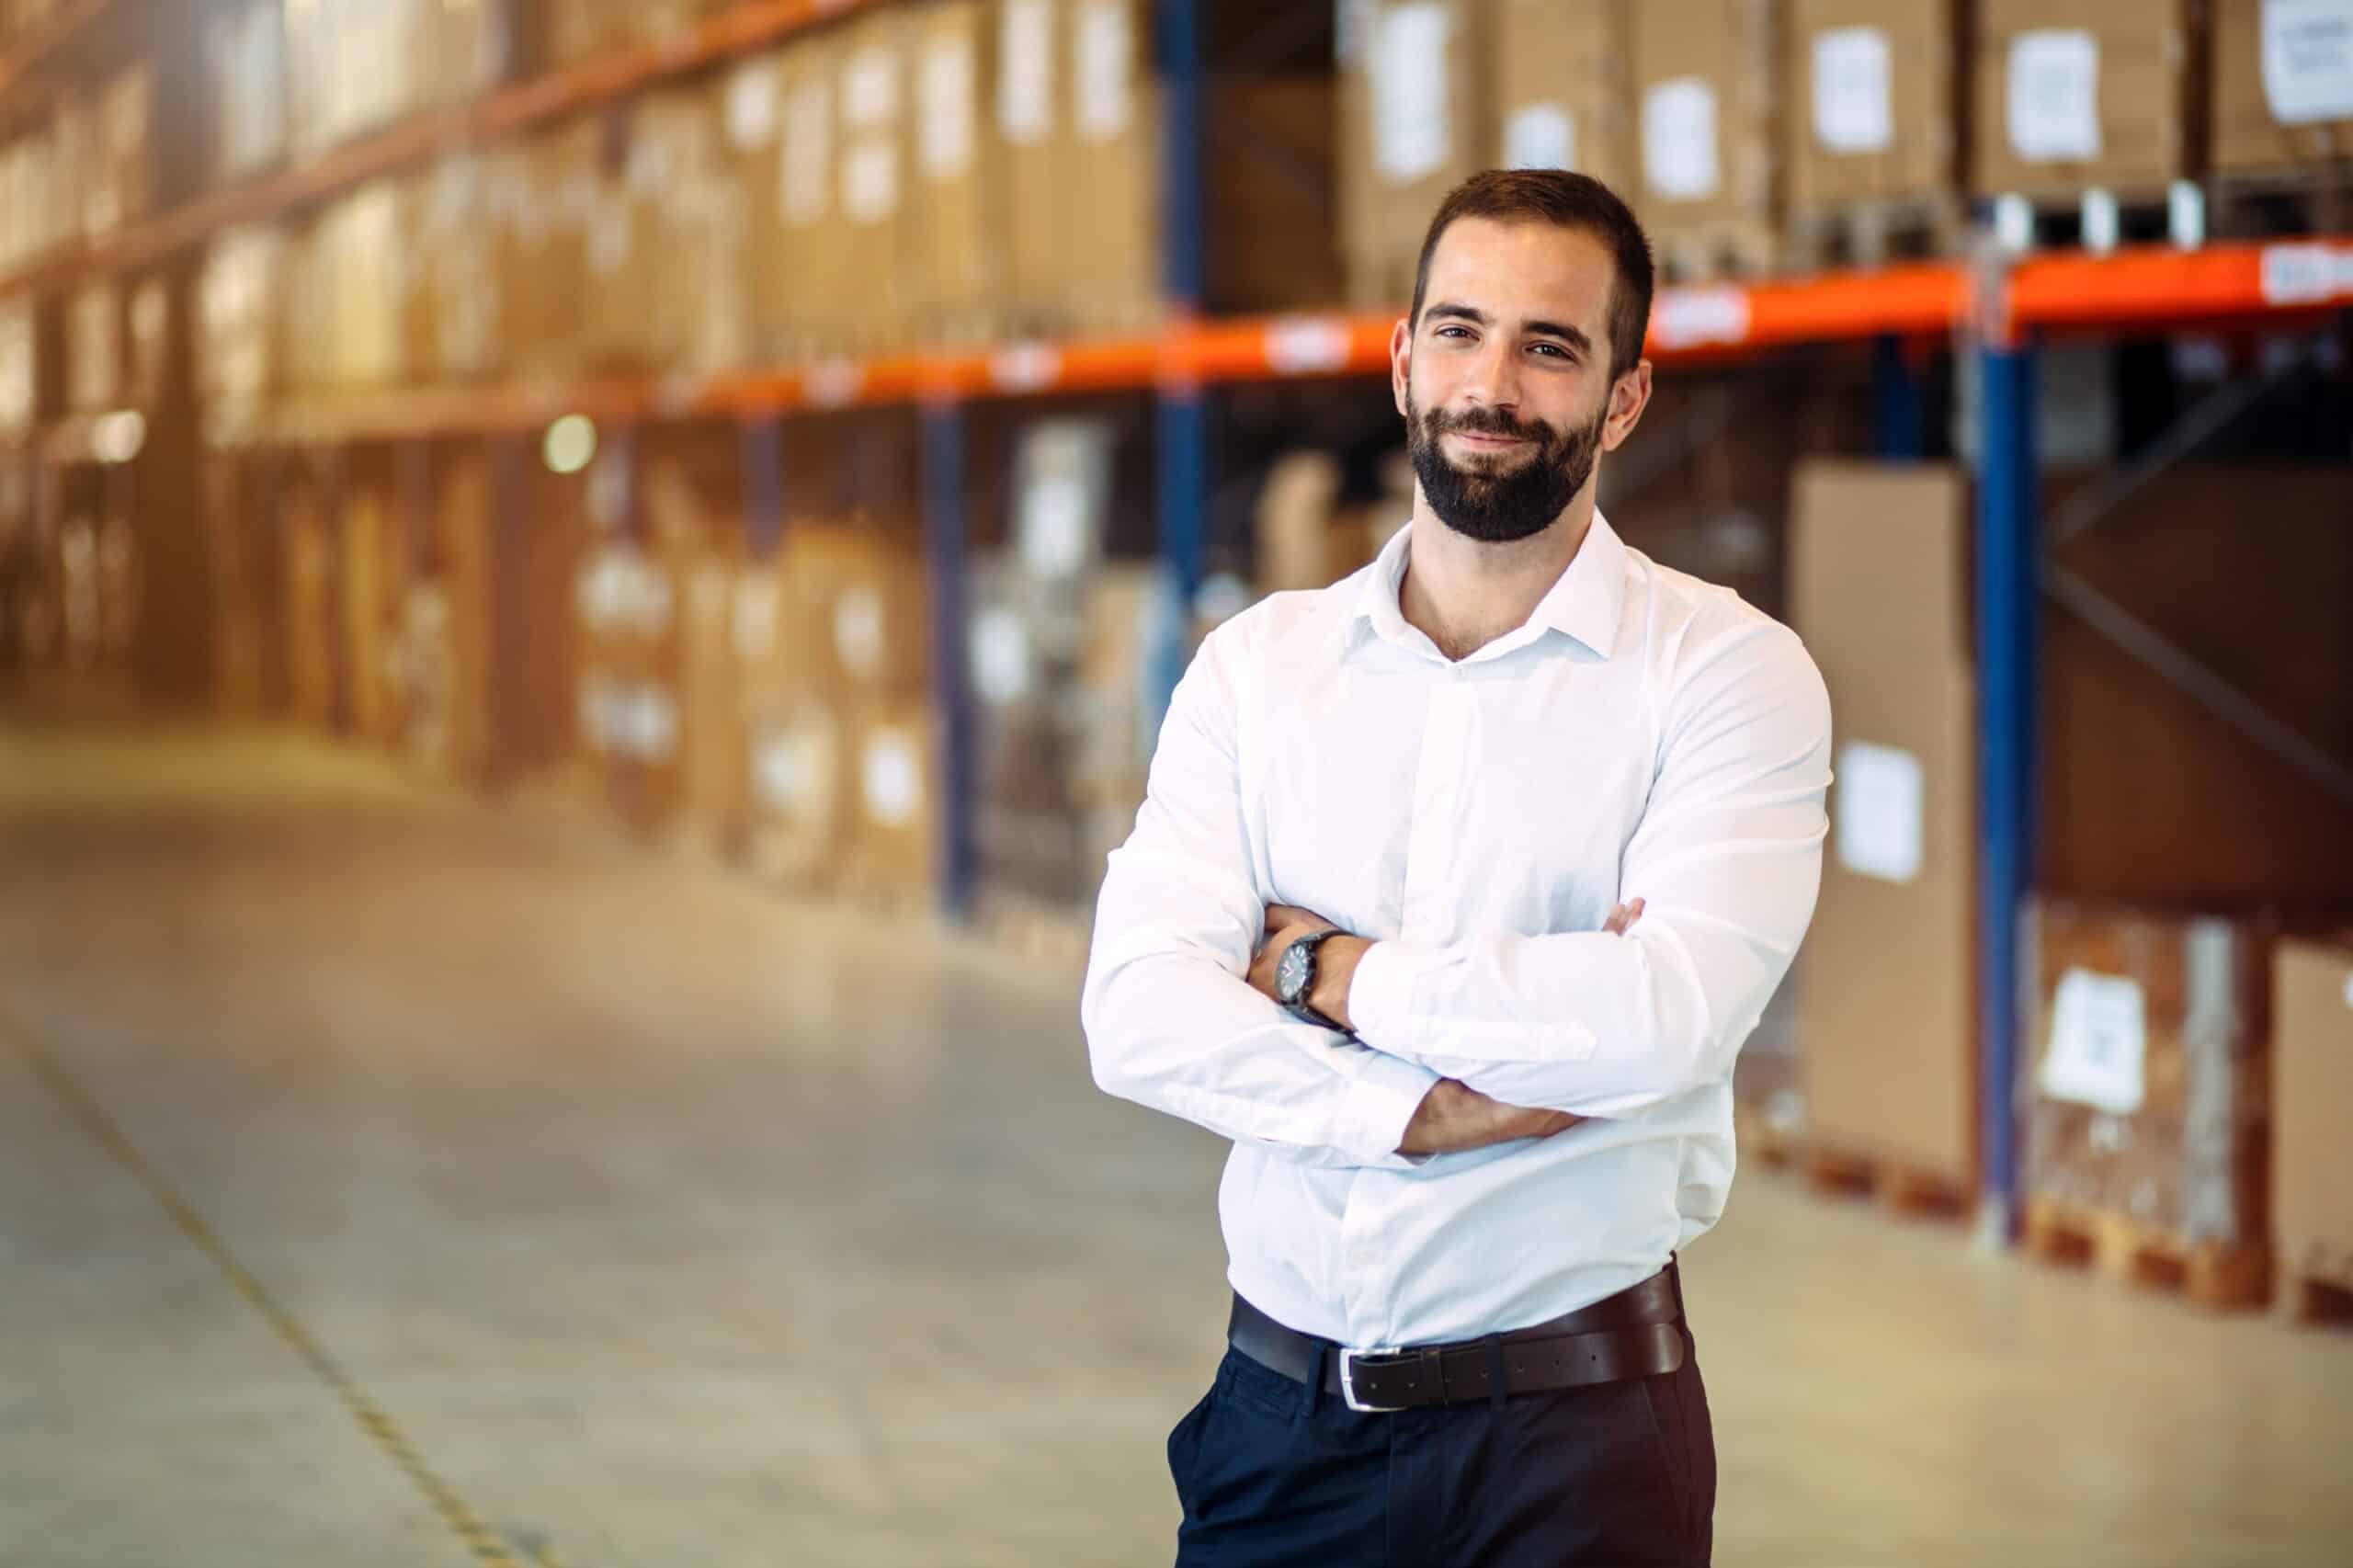 Logistics manager warehouse portrait